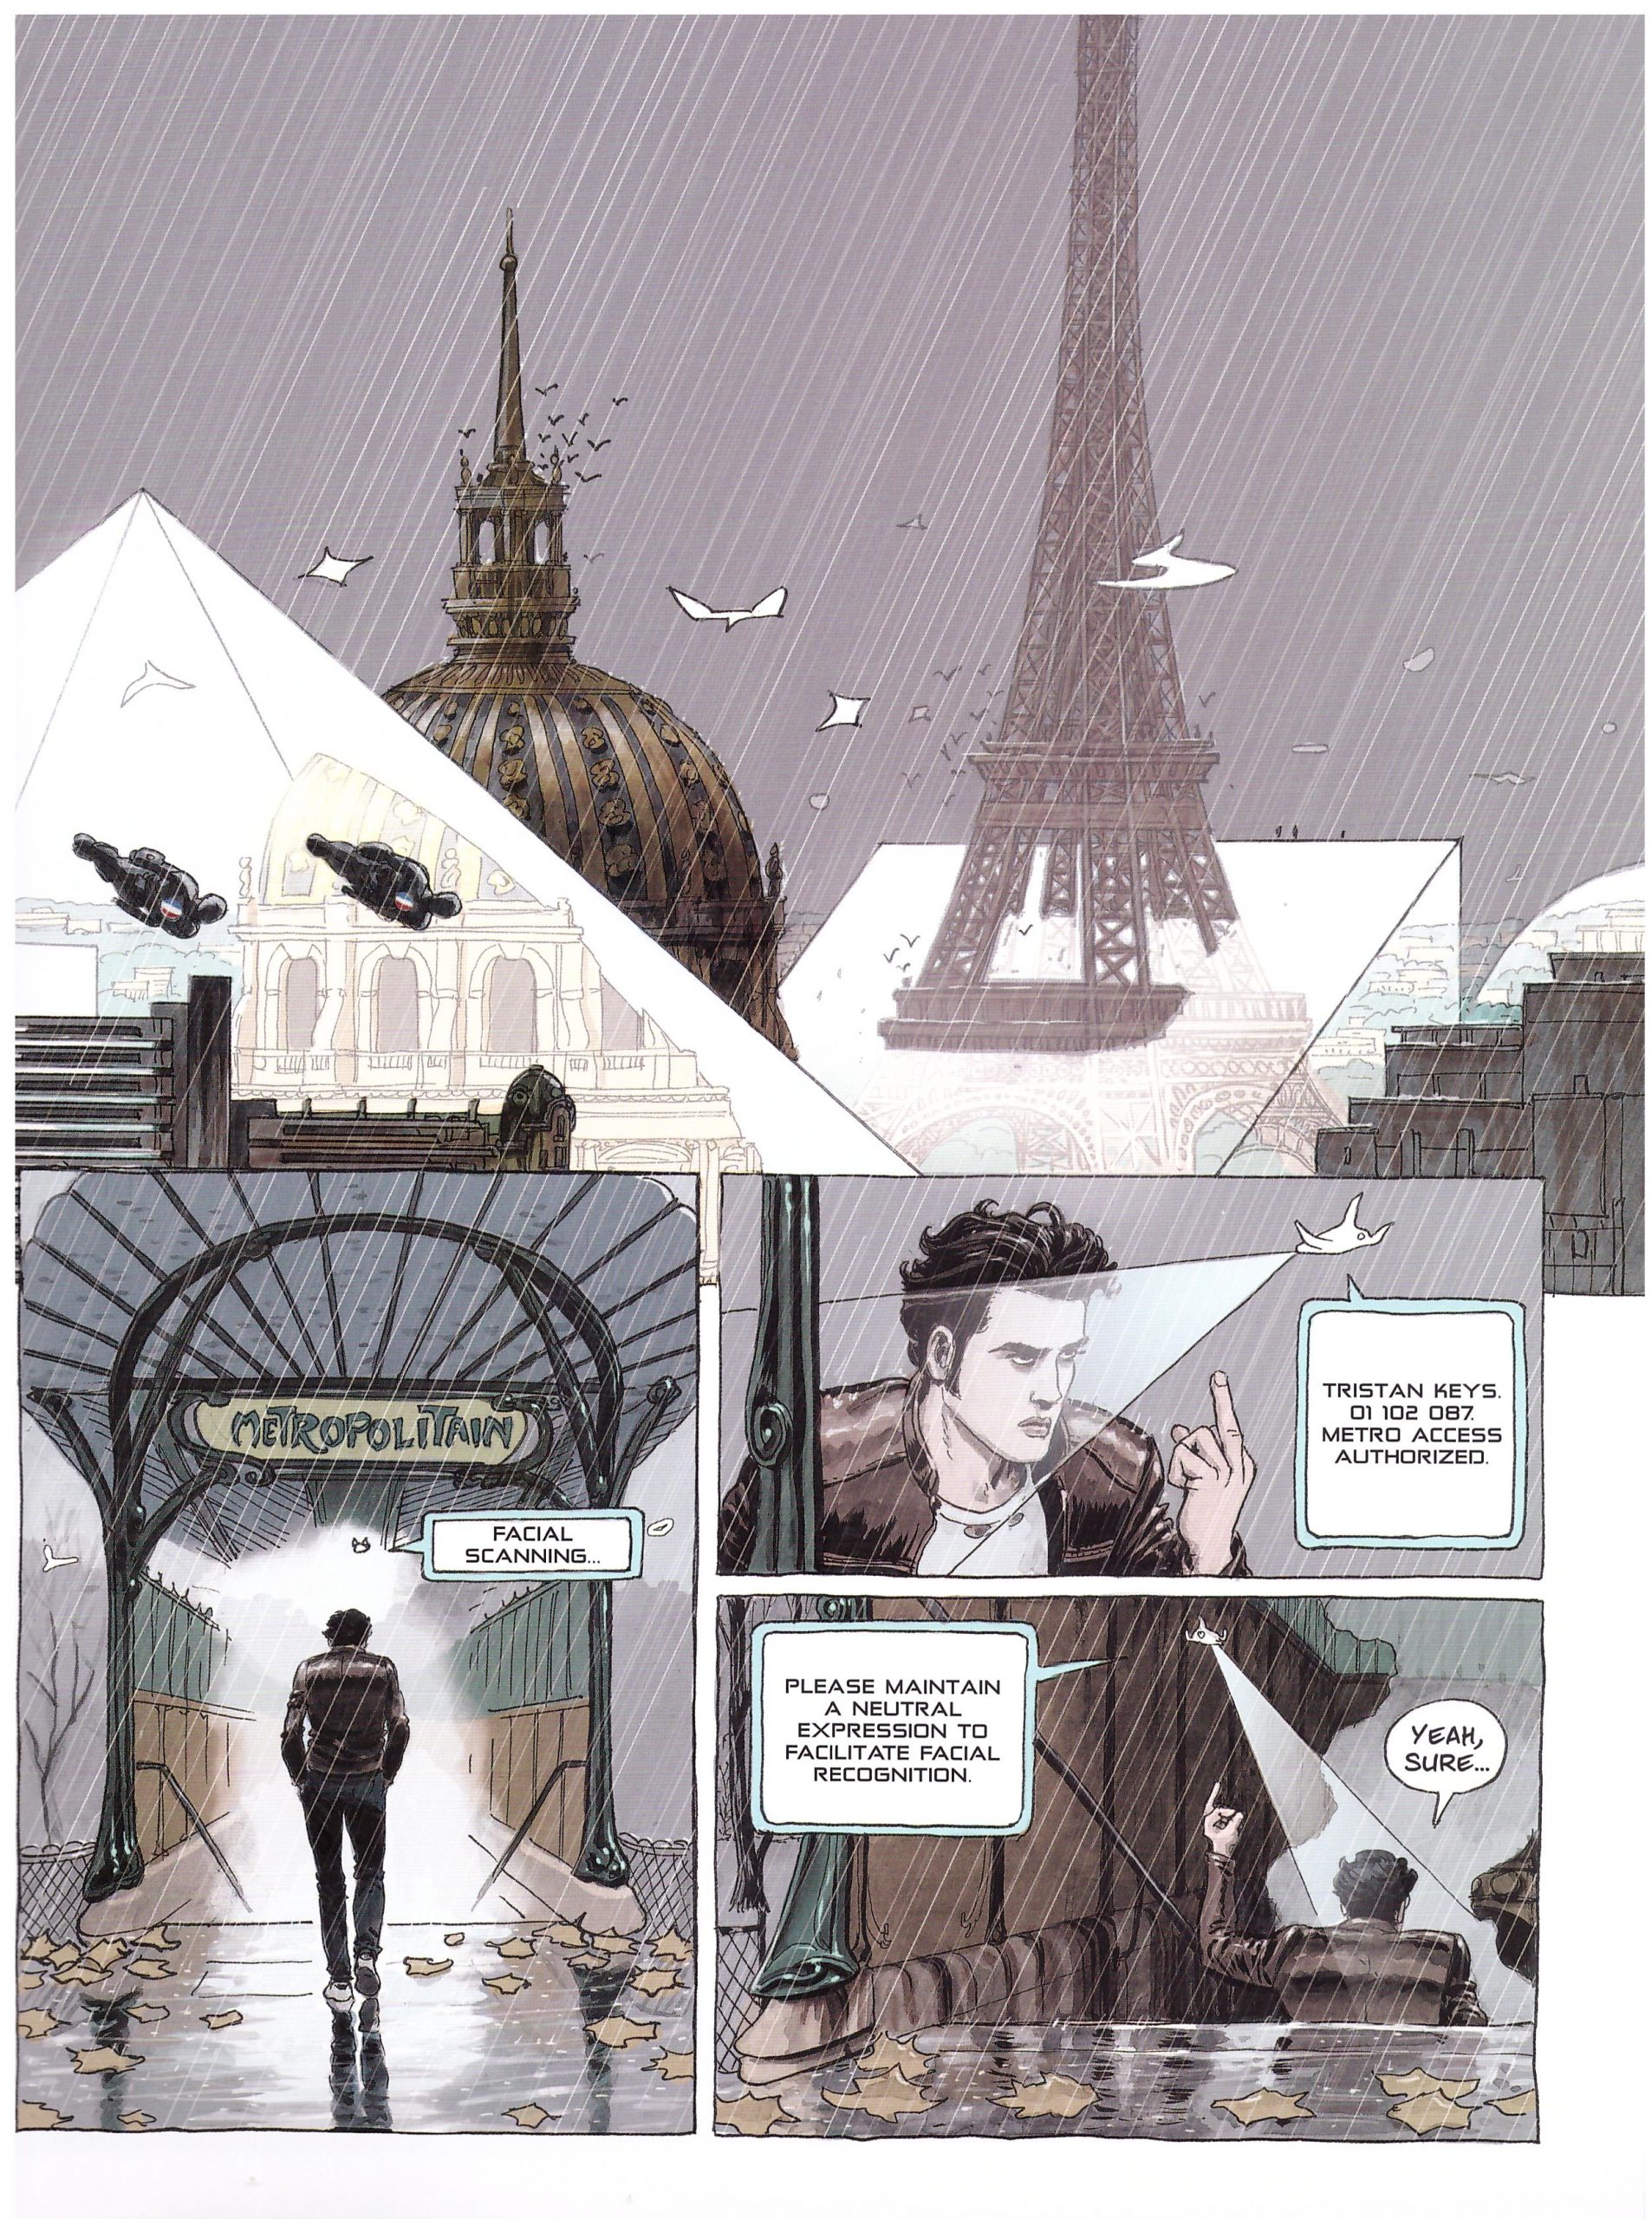 Paris 2119 graphic novel review